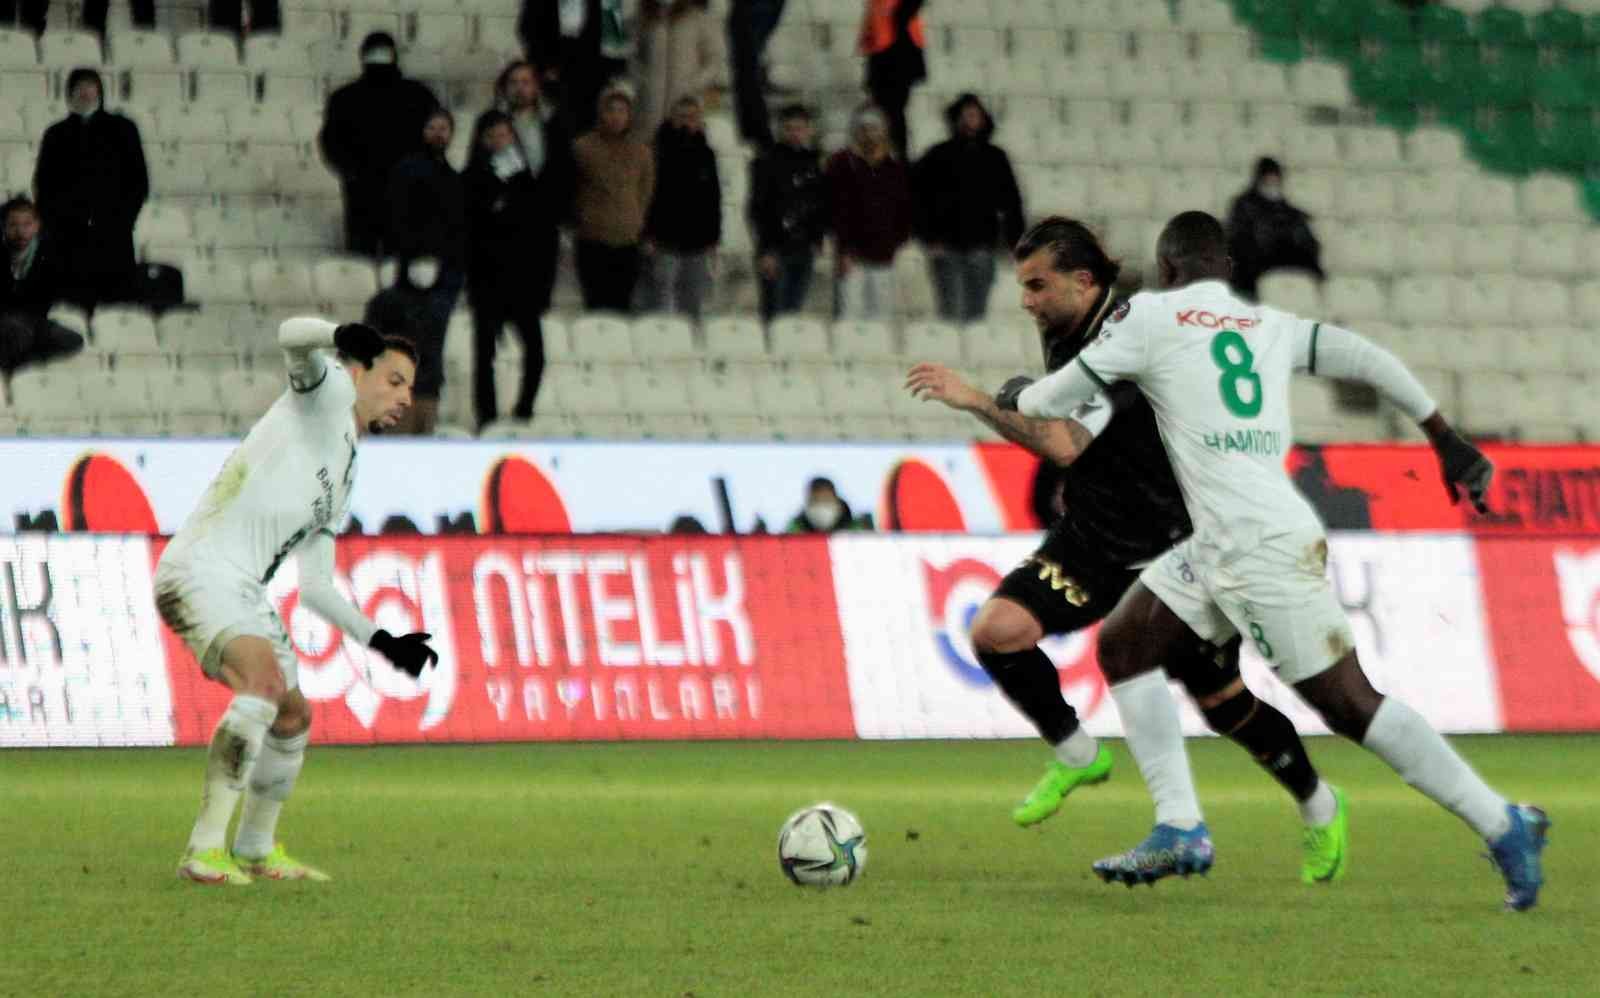 Spor Toto Süper Lig: Konyaspor: 0 - Giresunspor: 0 (İlk yarı) #konya